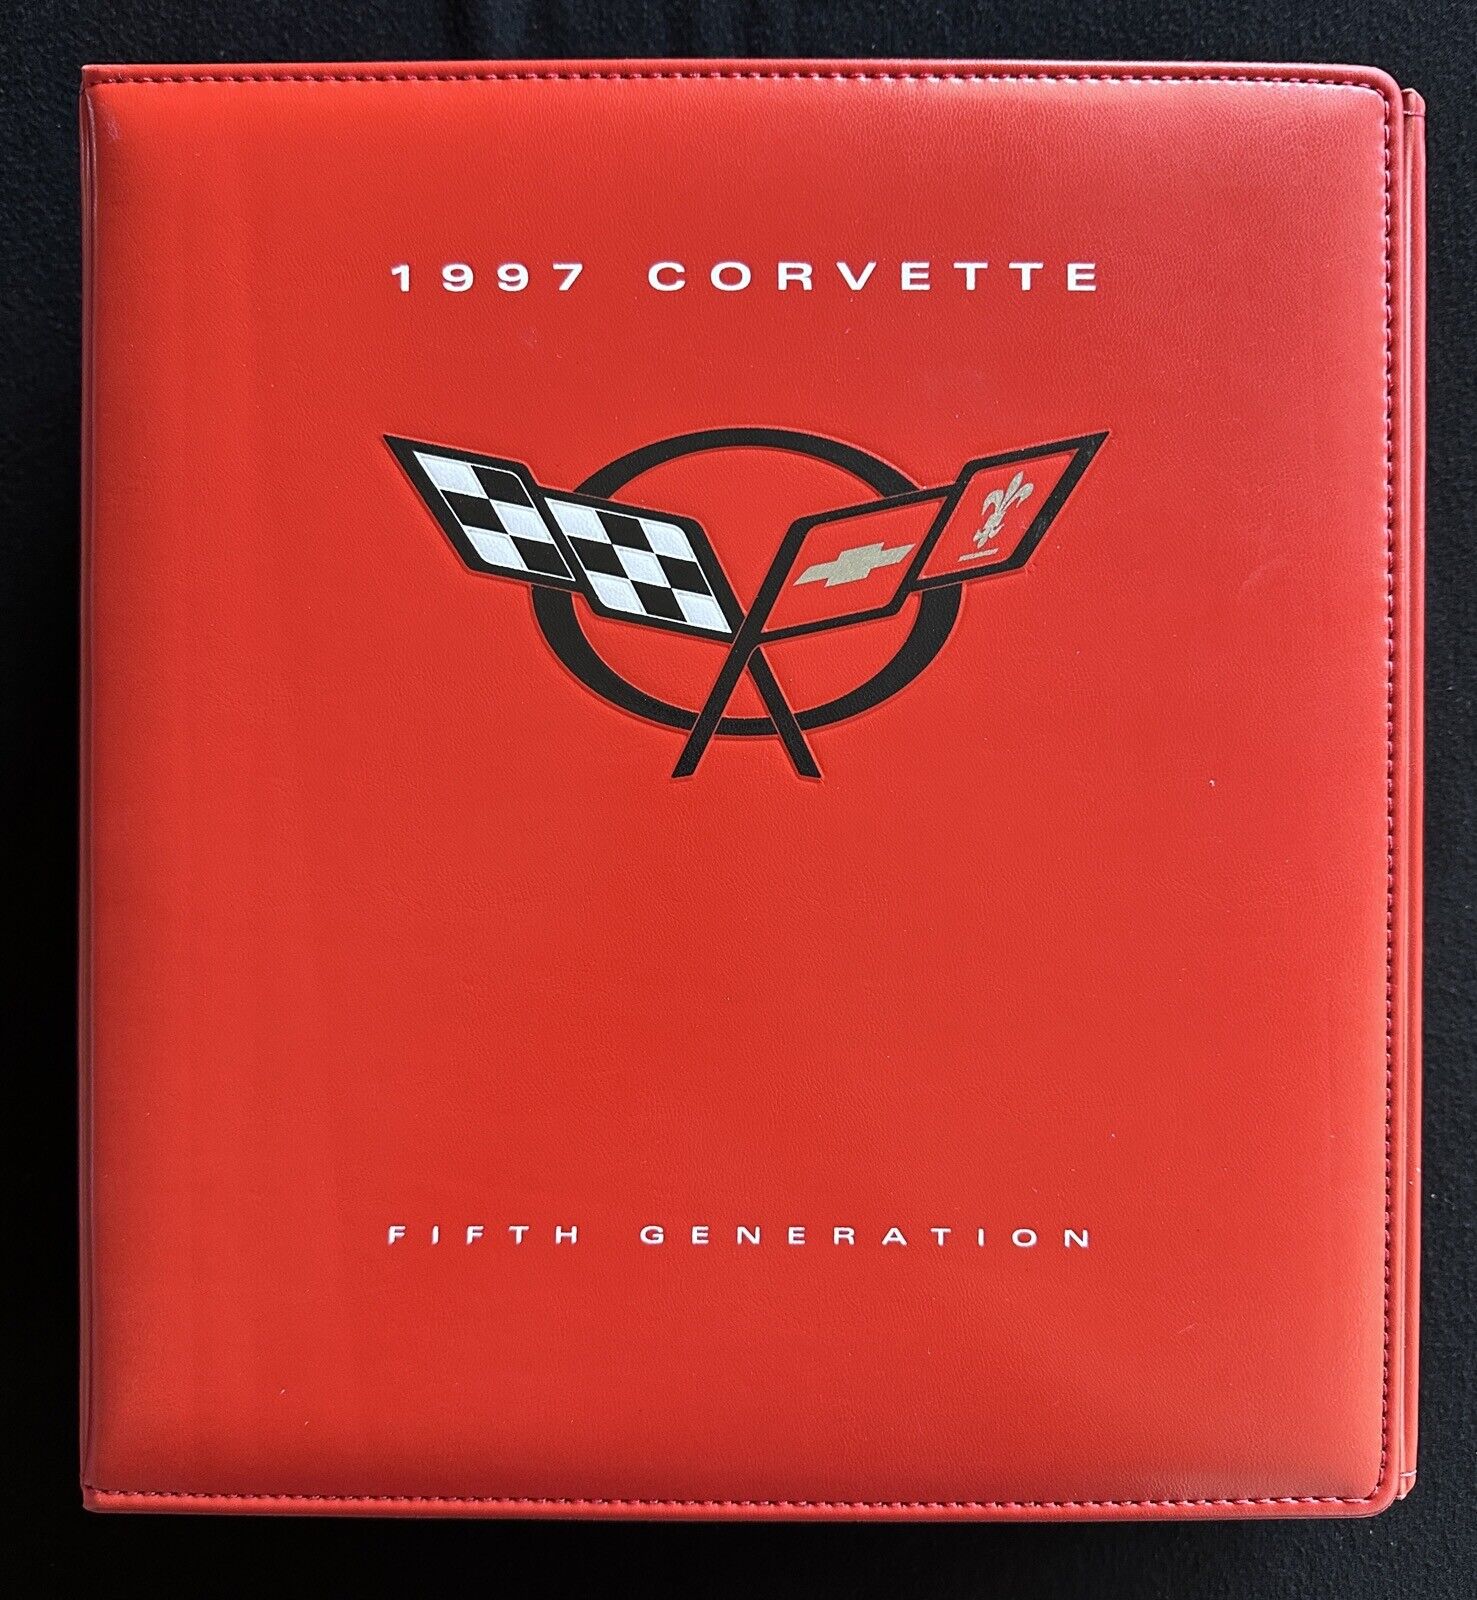 1997 Corvette Fifth Generation Press Kit Binder 56 Slides VHS Tape Black Book